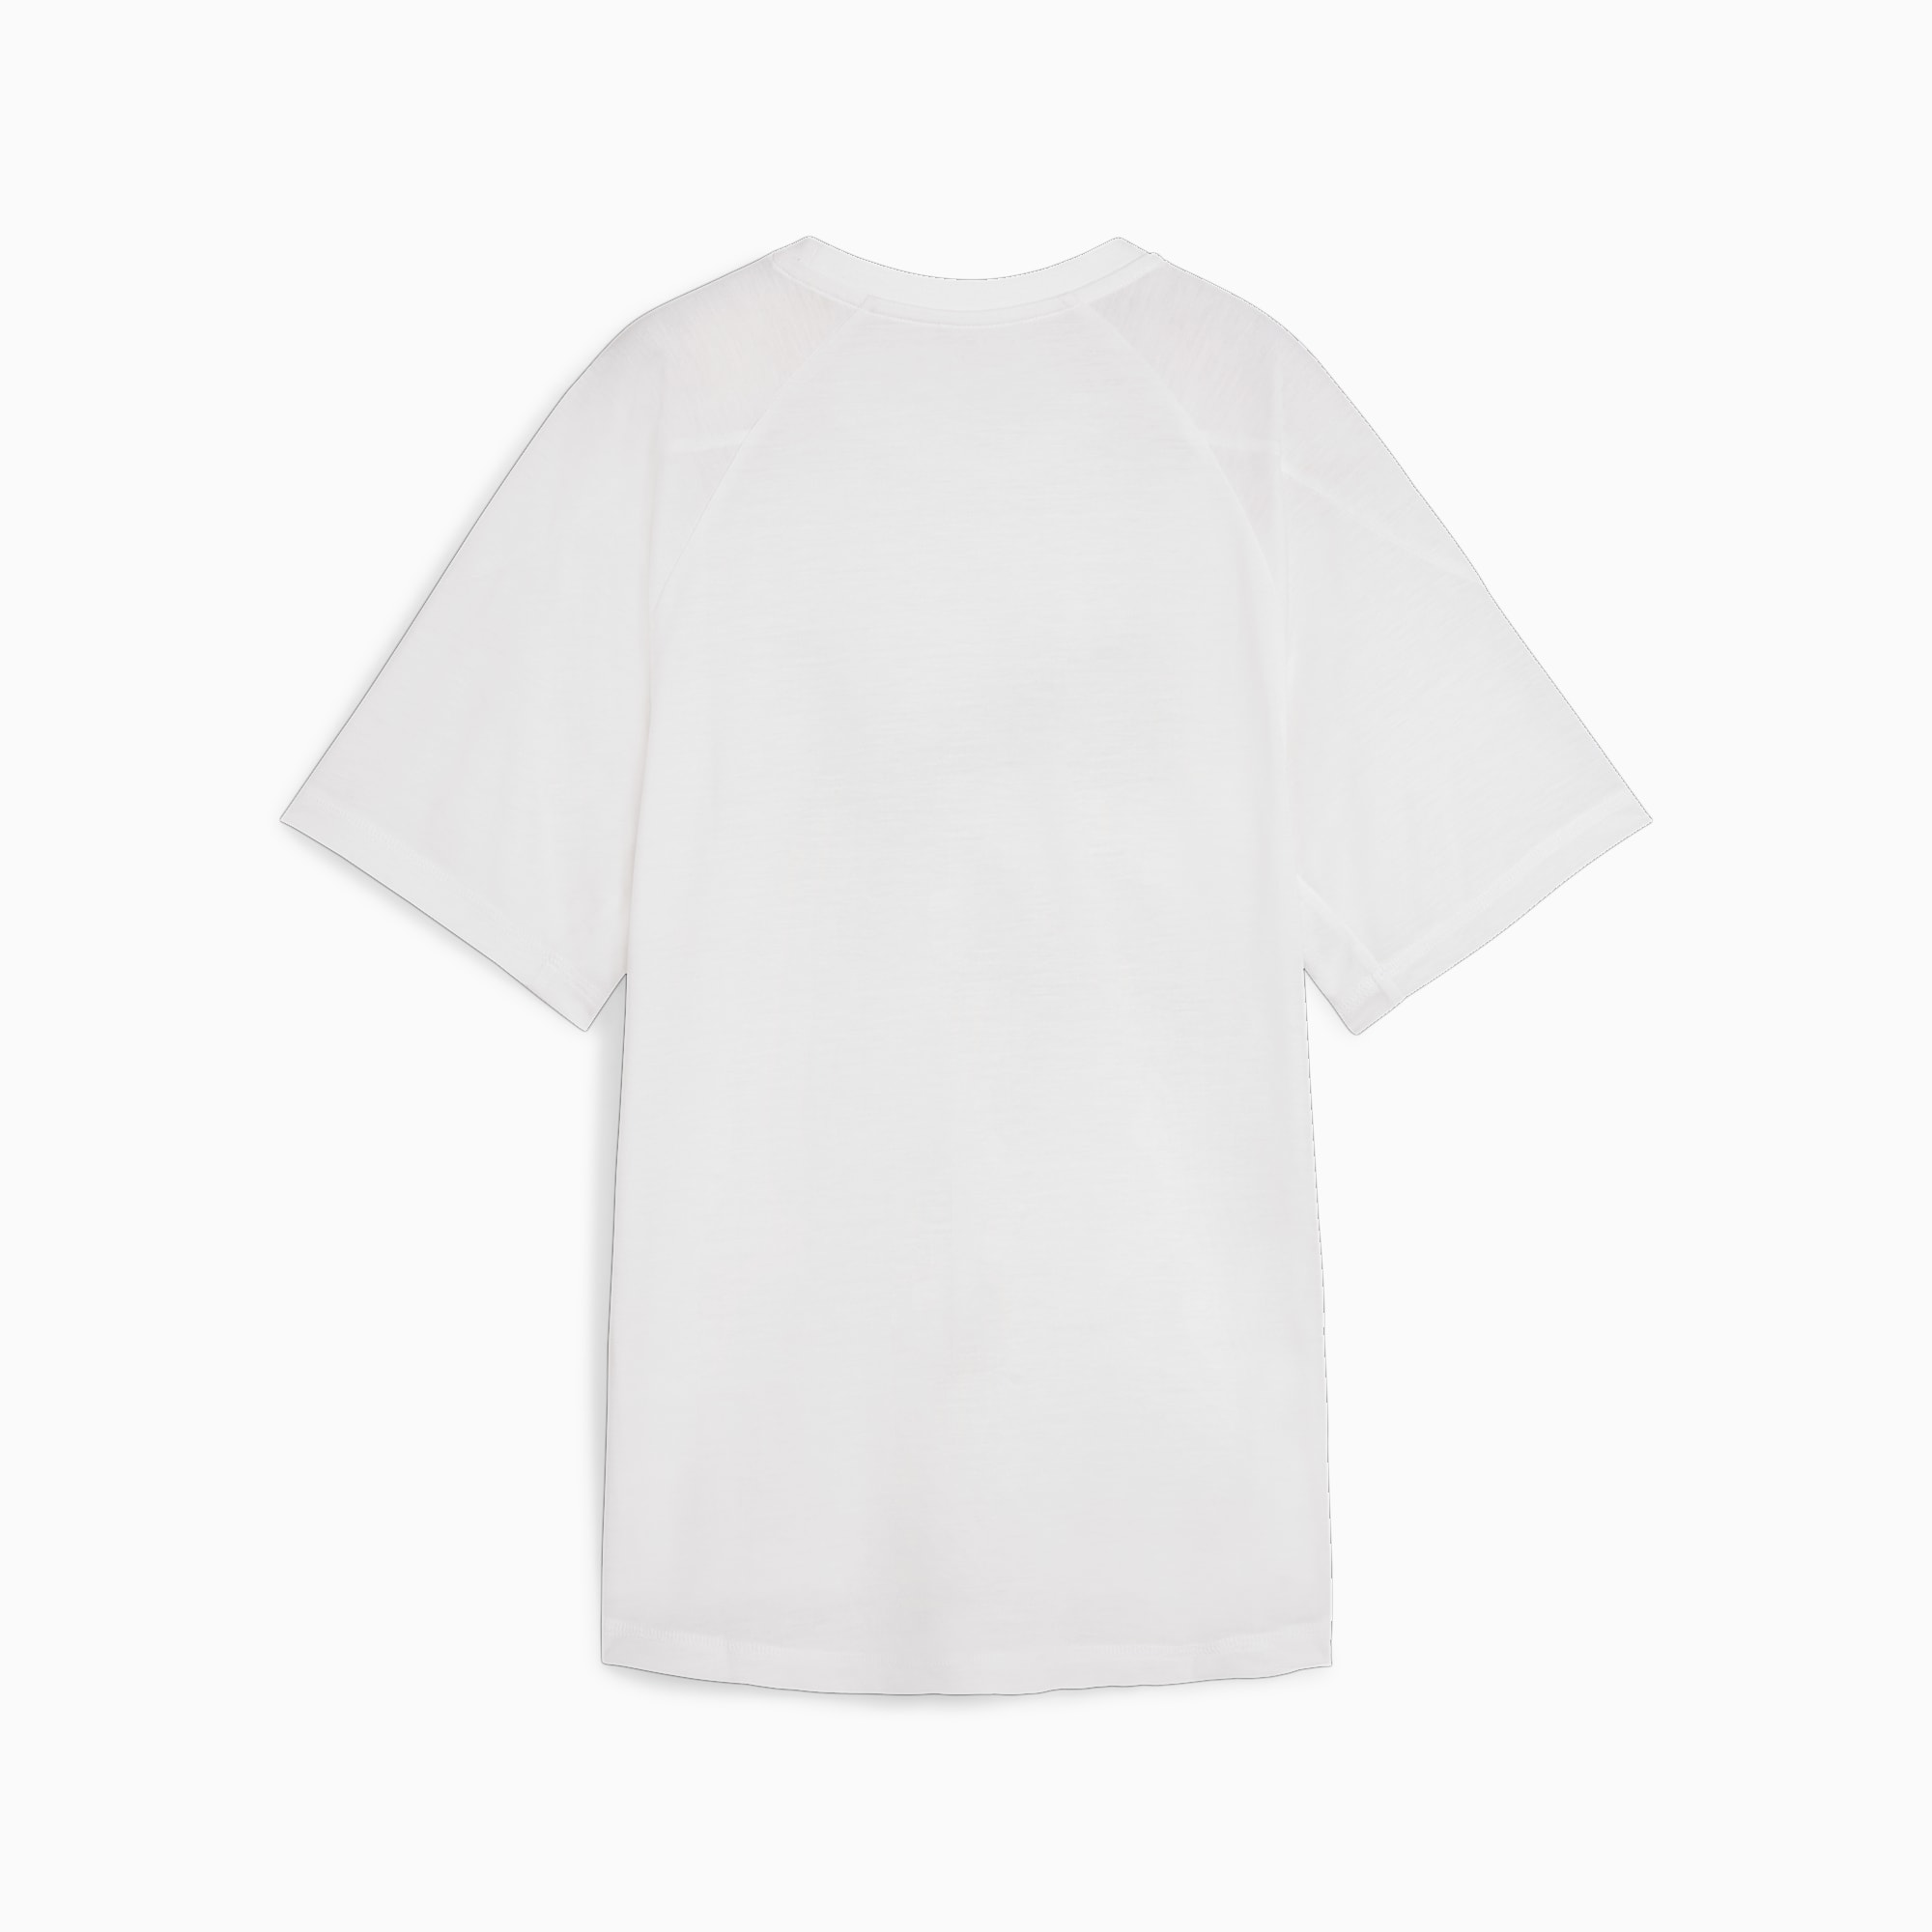 PUMA Evostripe Women's Graphic T-Shirt, White, Size M, Clothing